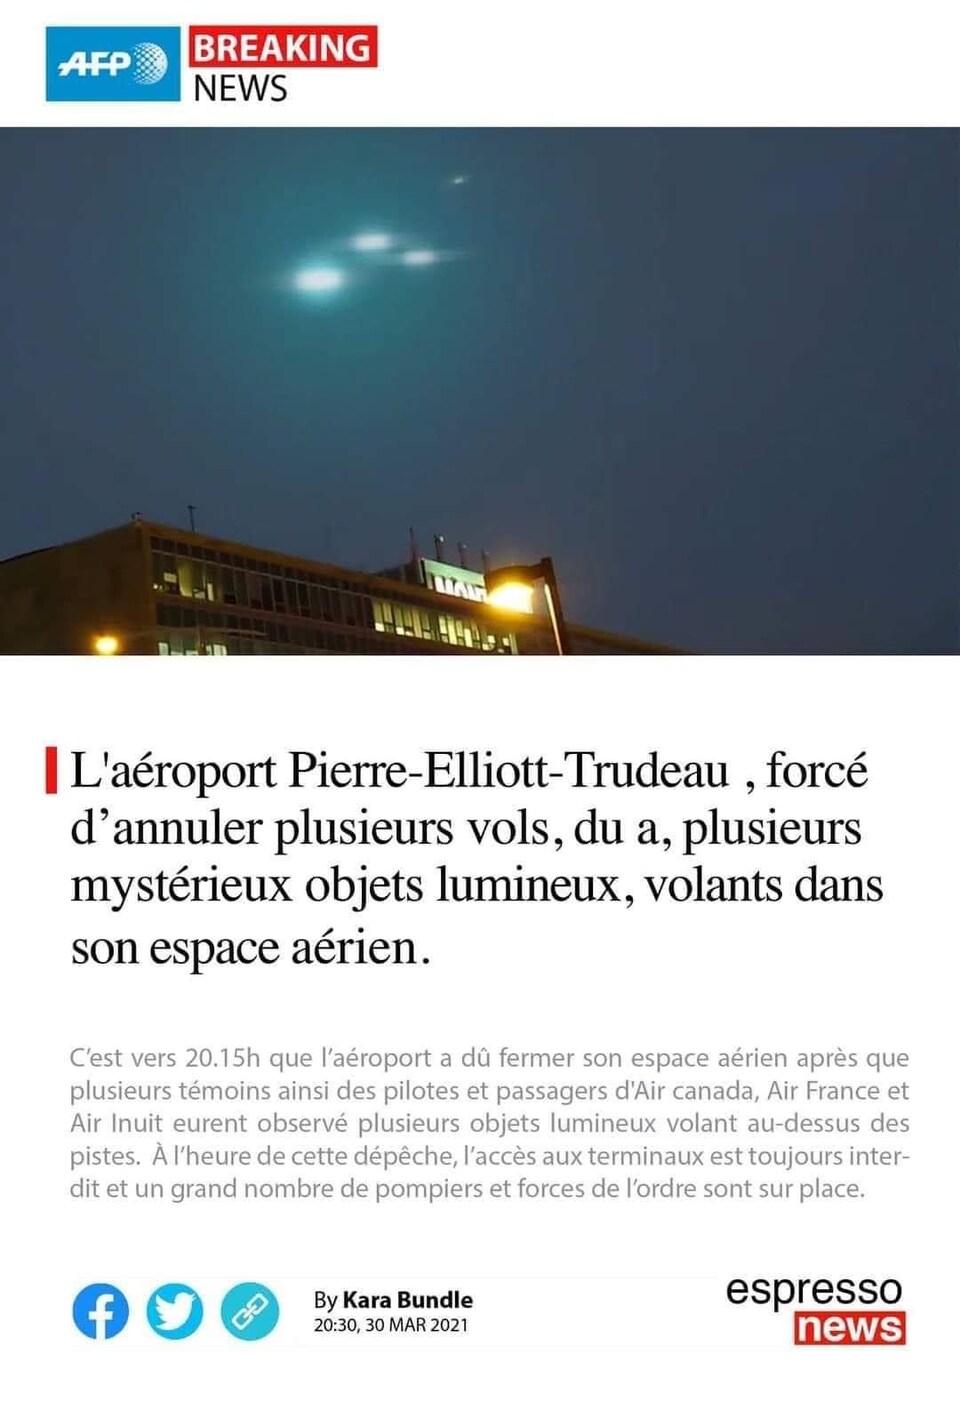 Une photo d'un faux article disant que l'aéroport Pierre-Elliott-Trudeau a été forcé d'annuler plusieurs vols en raison de plusieurs mystérieux objets lumineux volant dans son espace aérien.